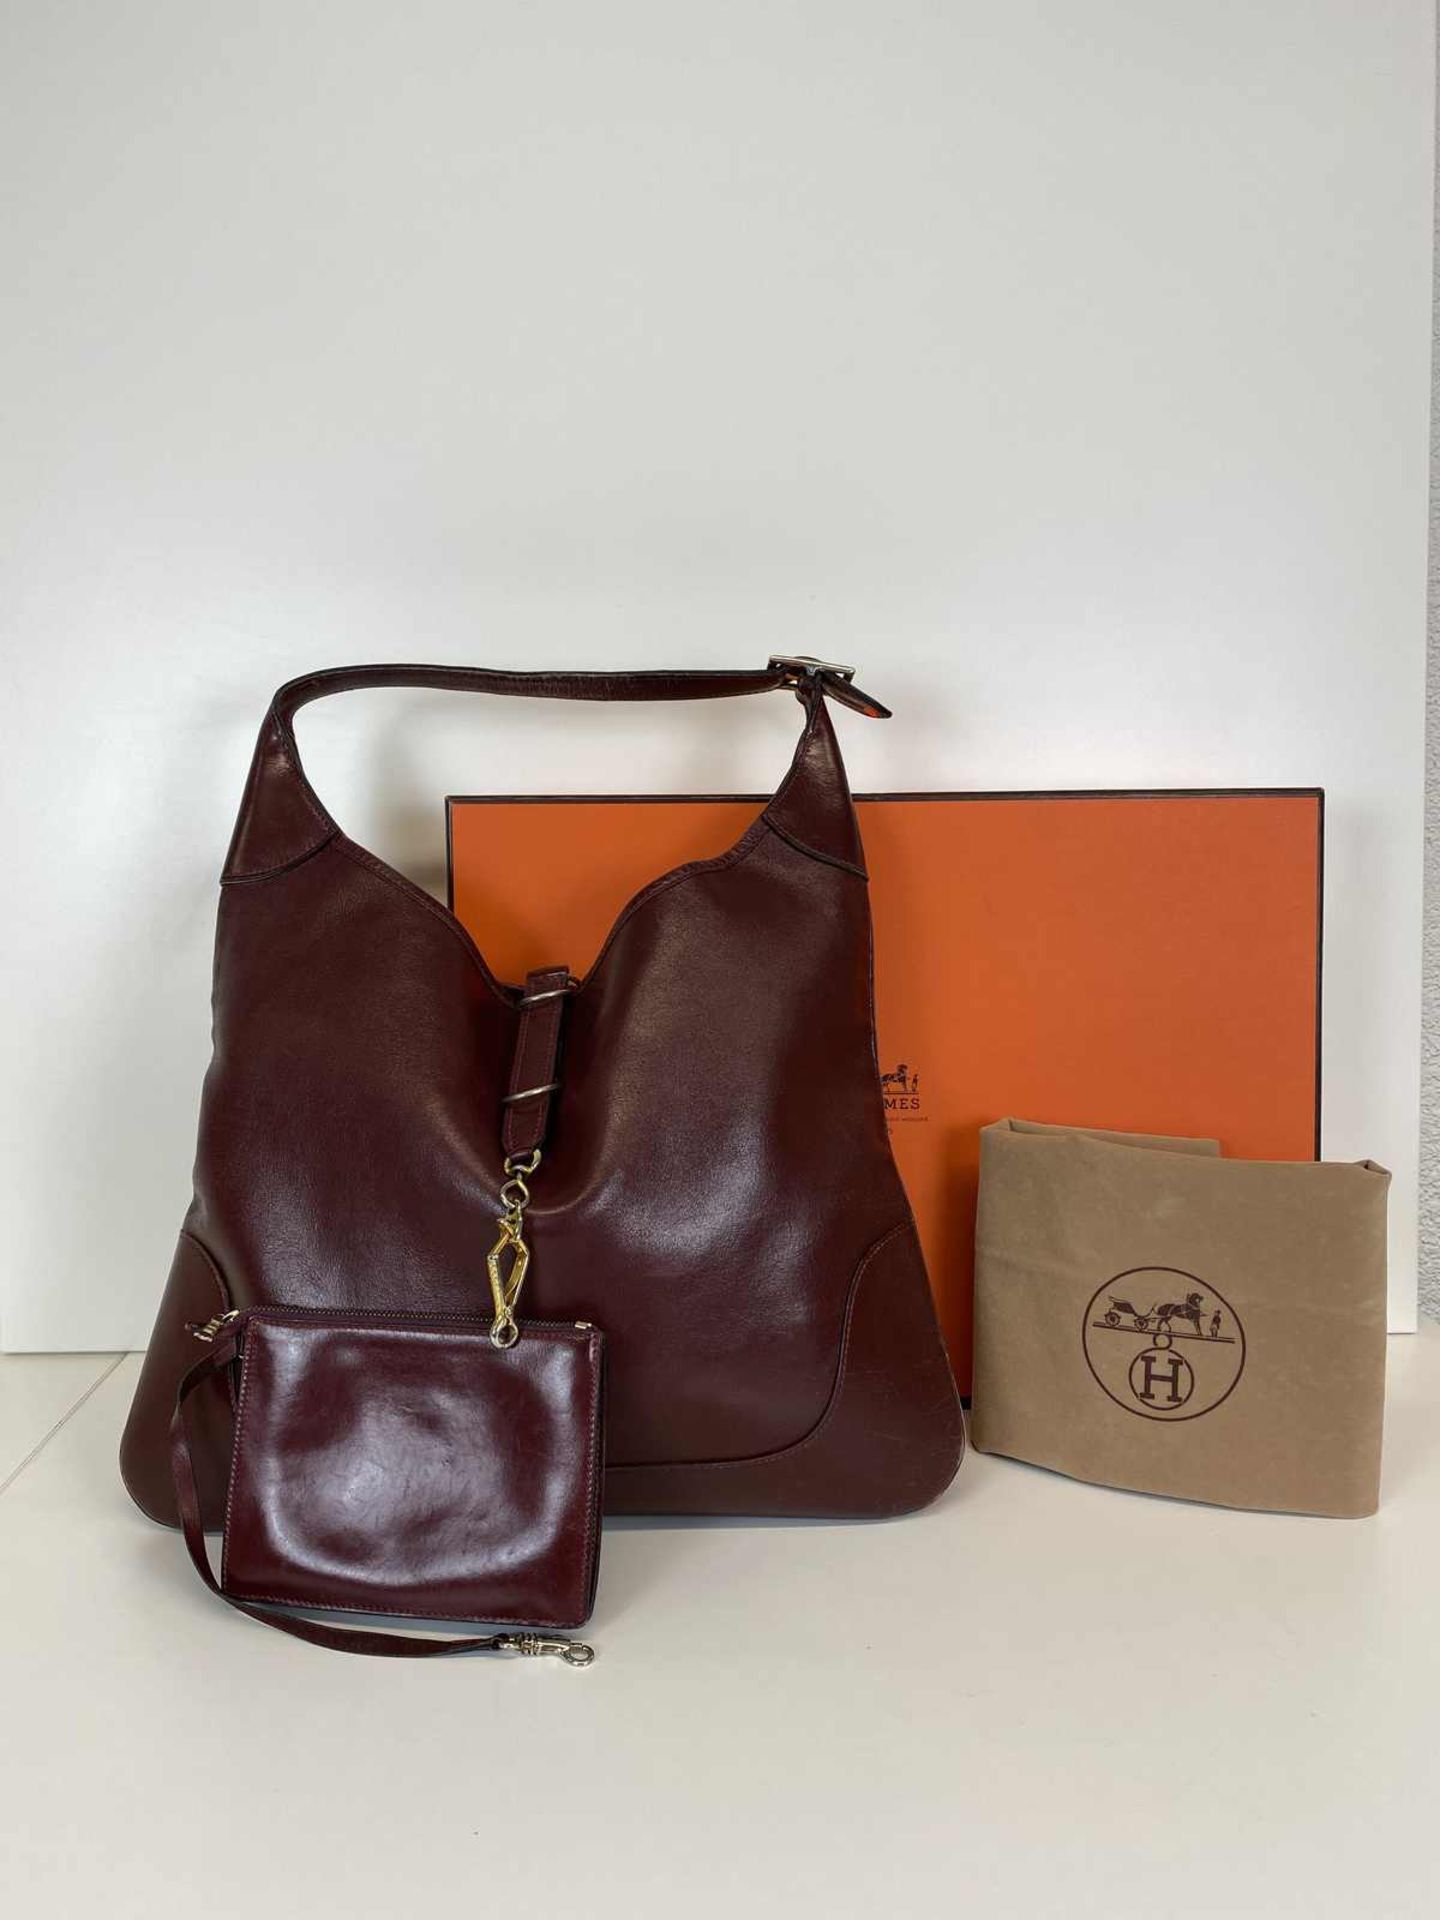 HERMÈS Handtasche Trim Handbag in burgunderrotem Leder aus dem Jahr 1971. Die 1958 entworfene und - Bild 3 aus 5